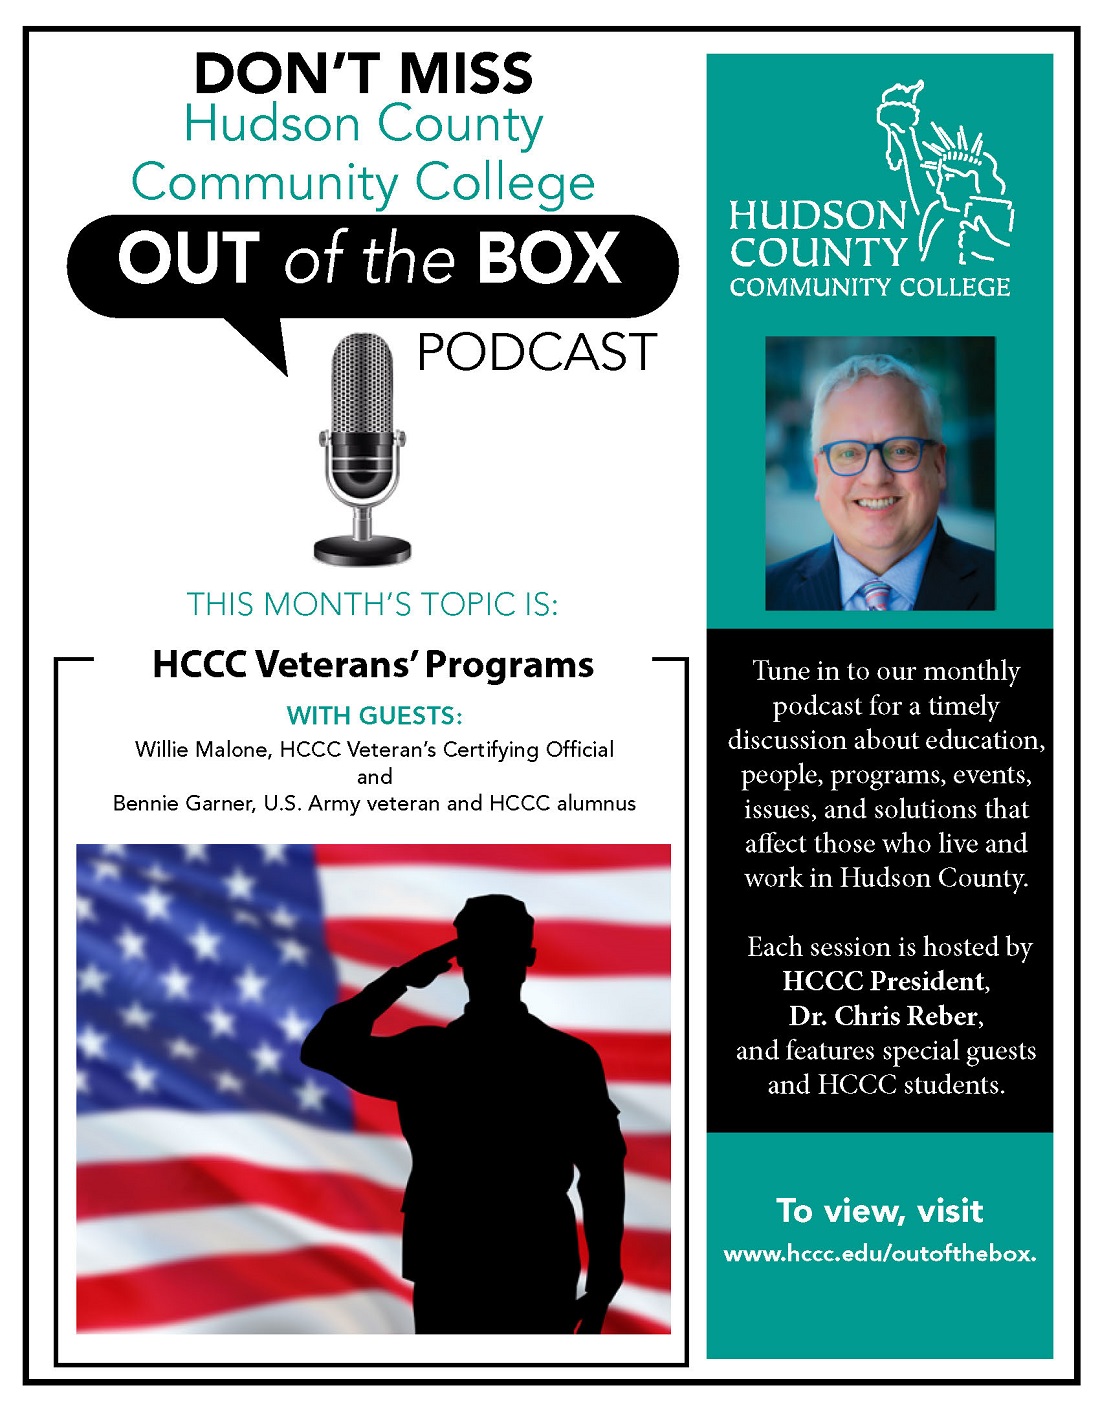 HCCC Veterans' Program